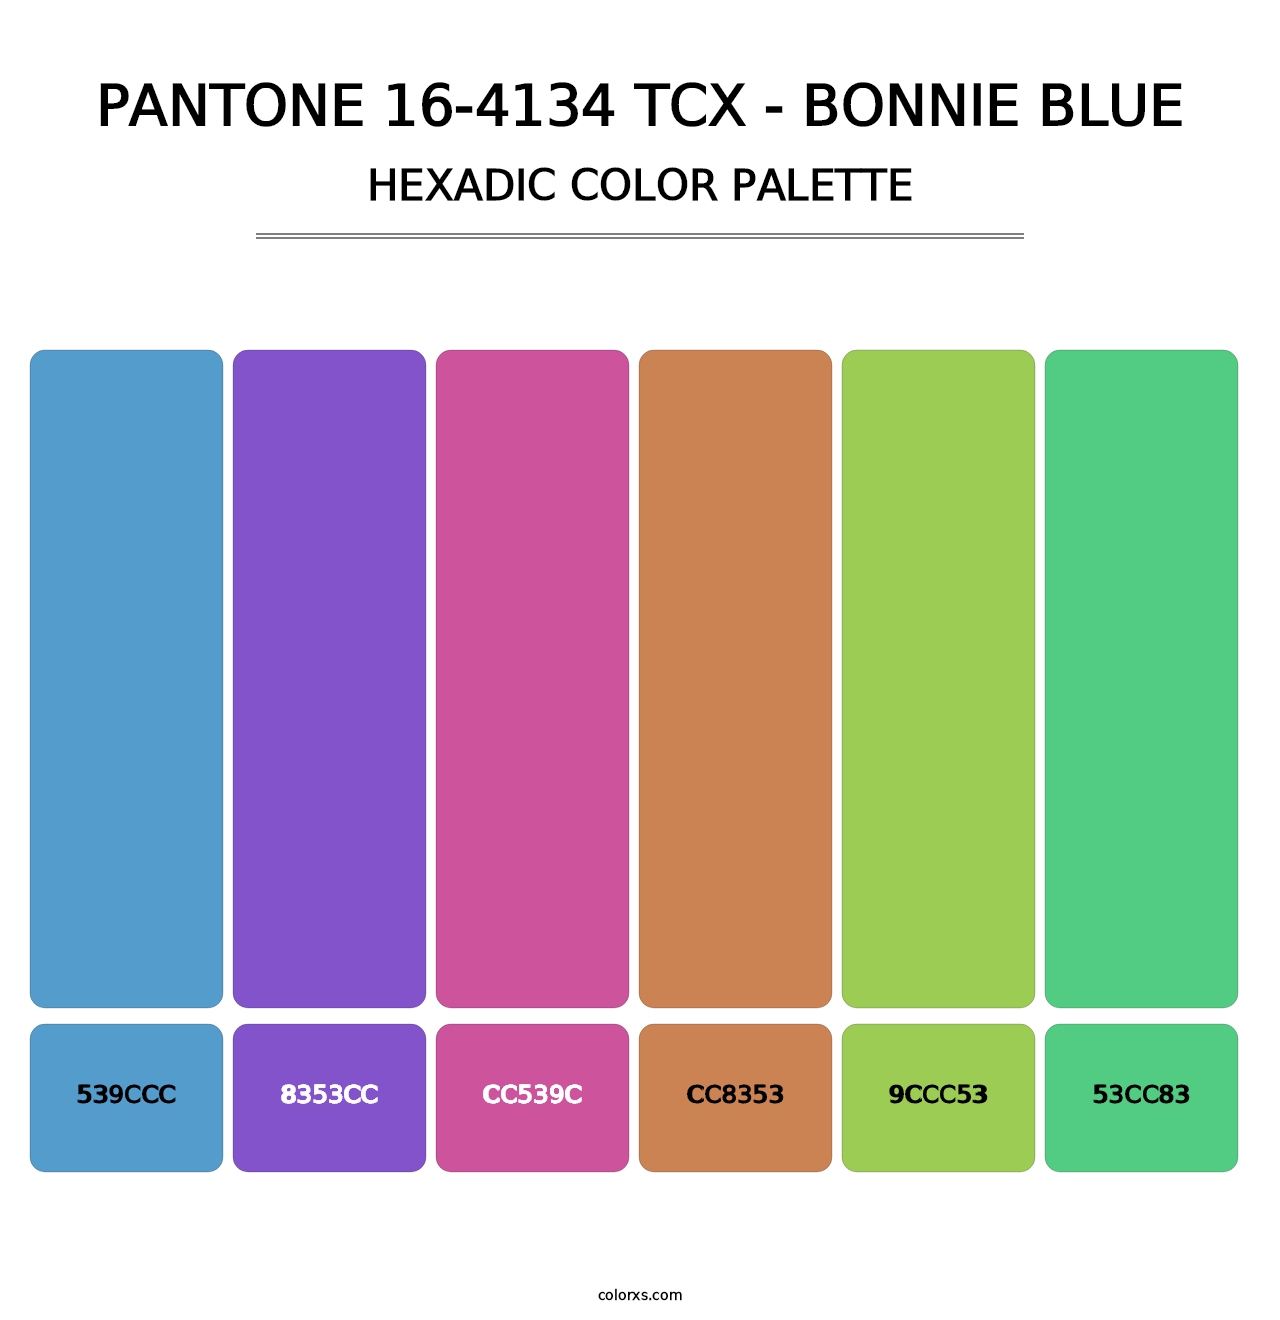 PANTONE 16-4134 TCX - Bonnie Blue - Hexadic Color Palette